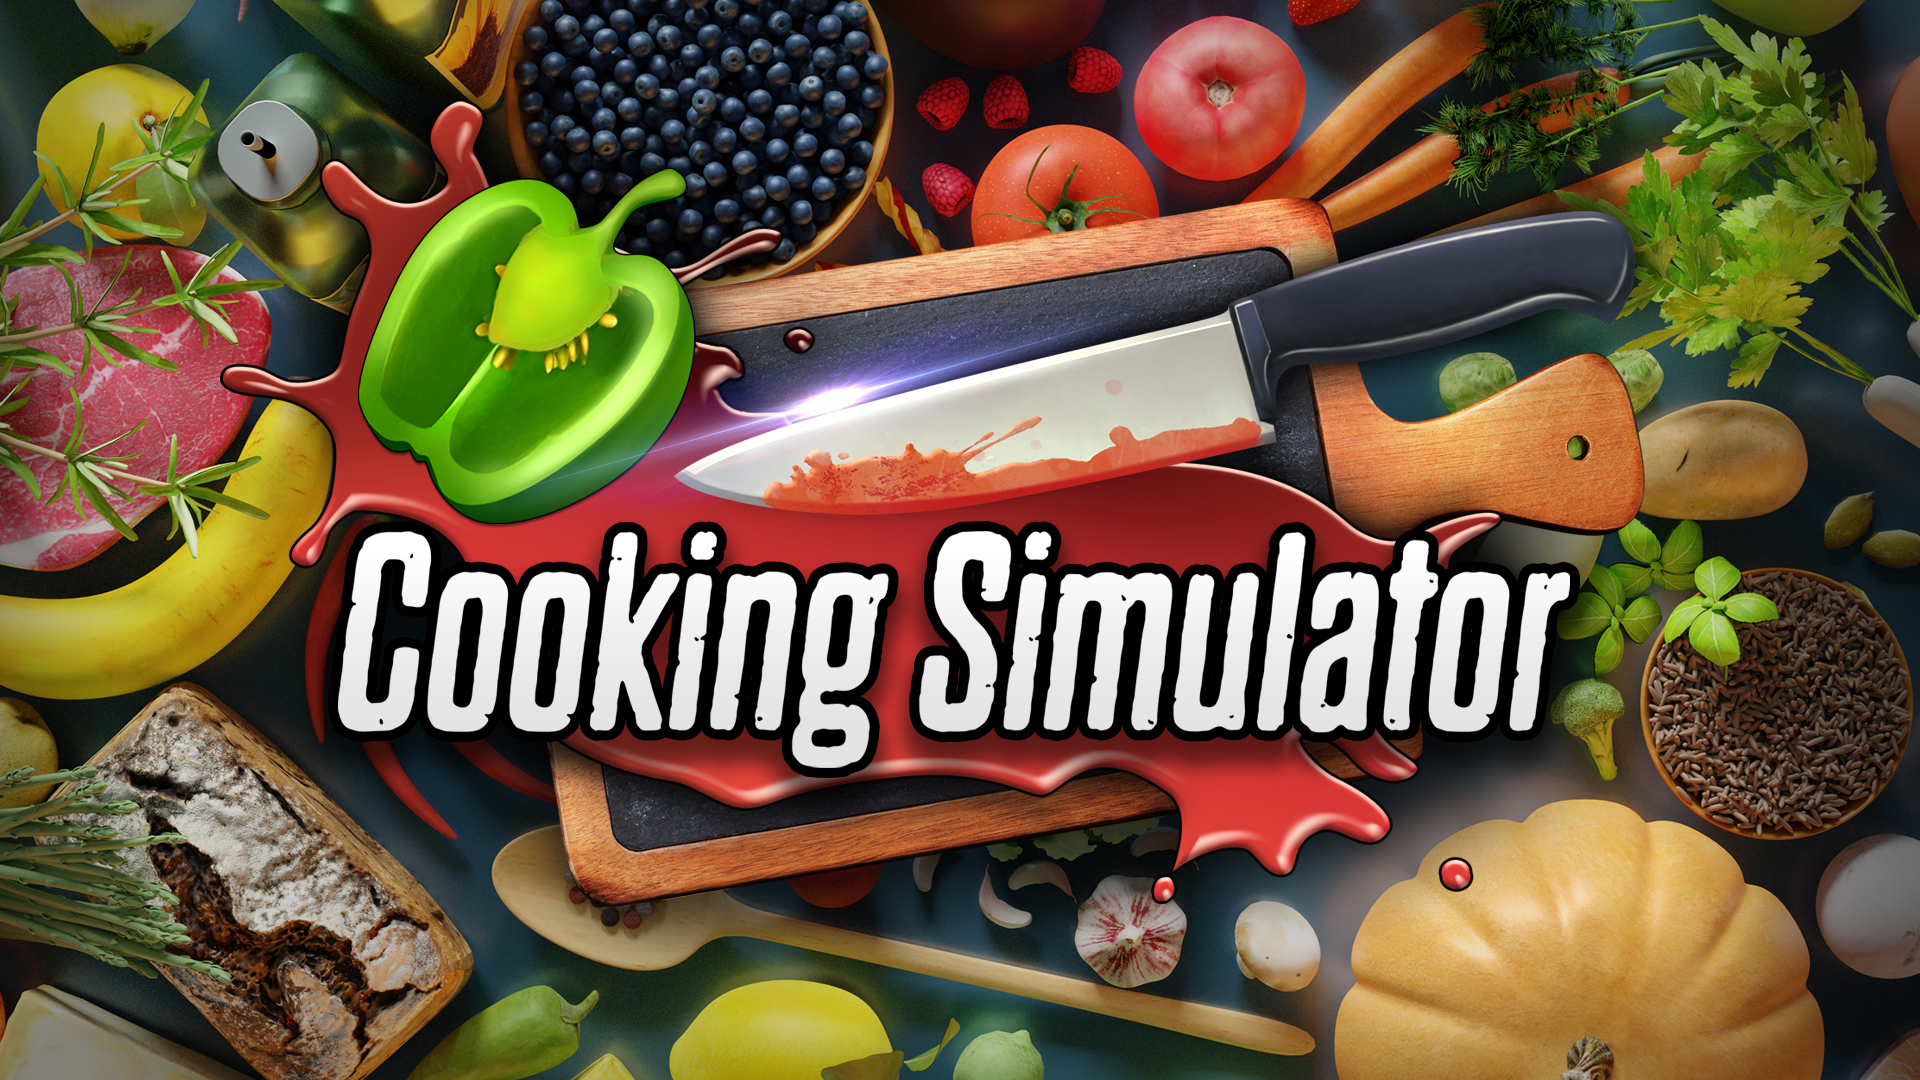 Medovik, Cooking Simulator Wiki